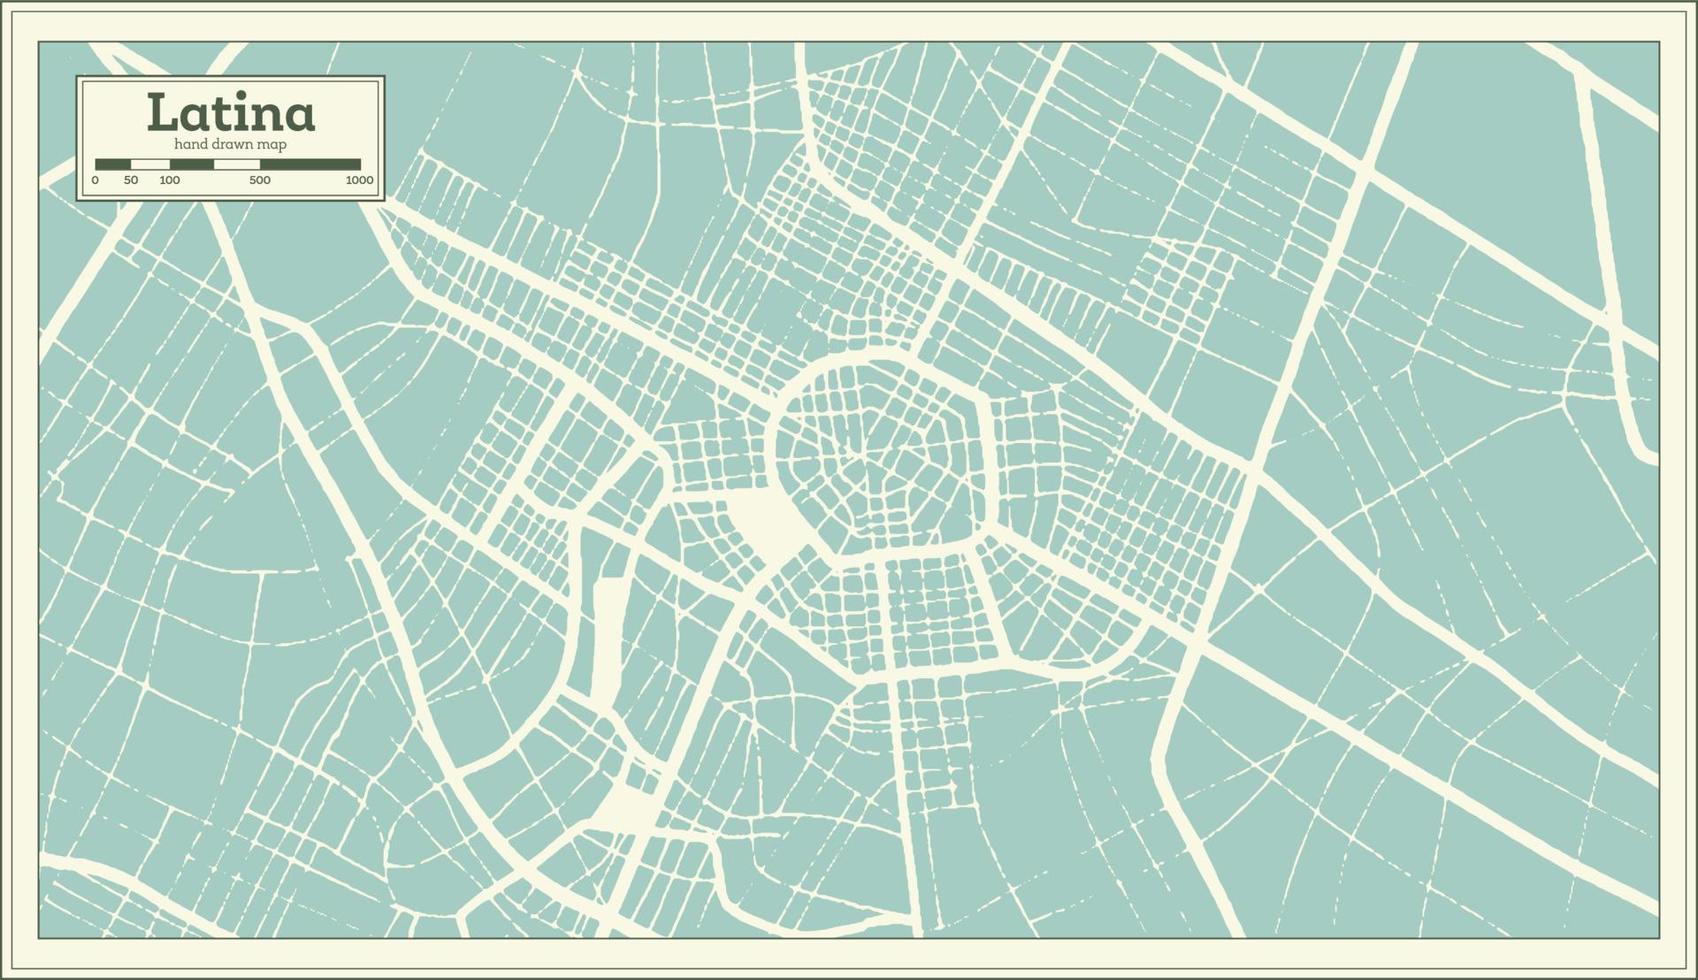 mapa de la ciudad de italia latina en estilo retro. esquema del mapa. vector